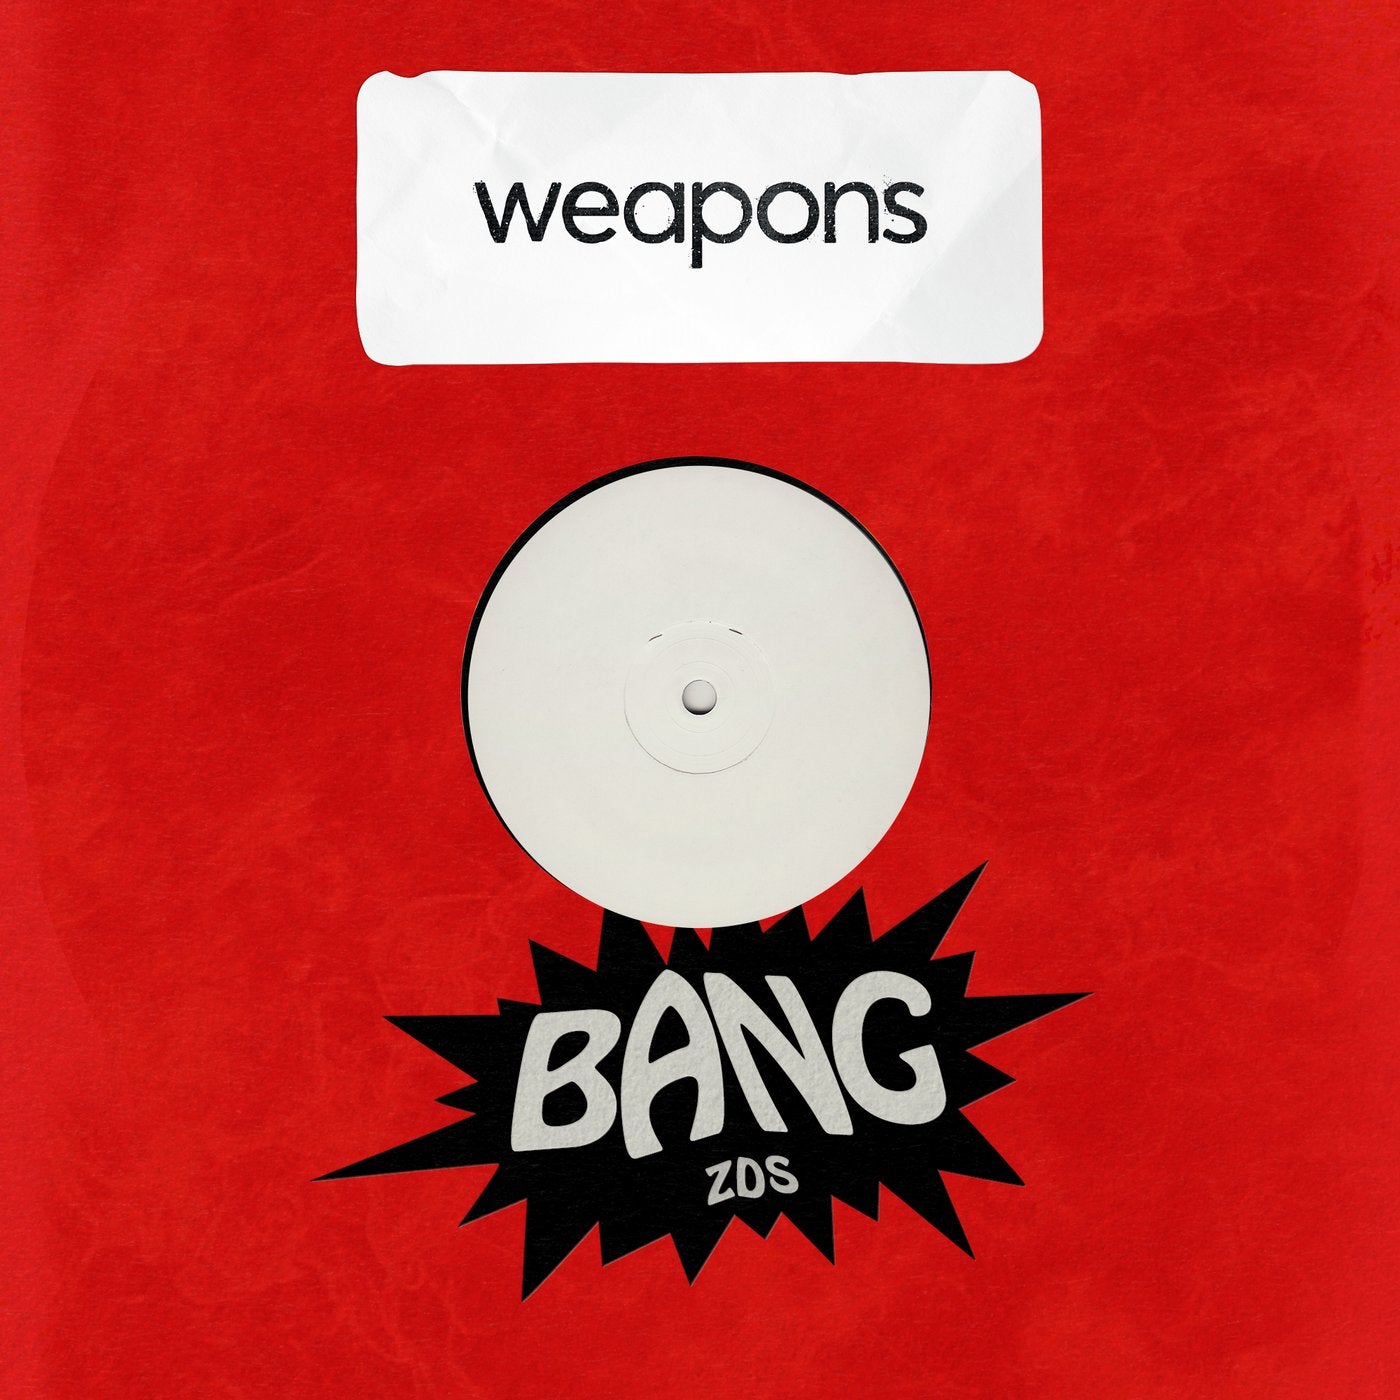 Bang originals. Bang! Альбомы. Bang Original. Бэнг альбом. Бэнг альбом 2013.